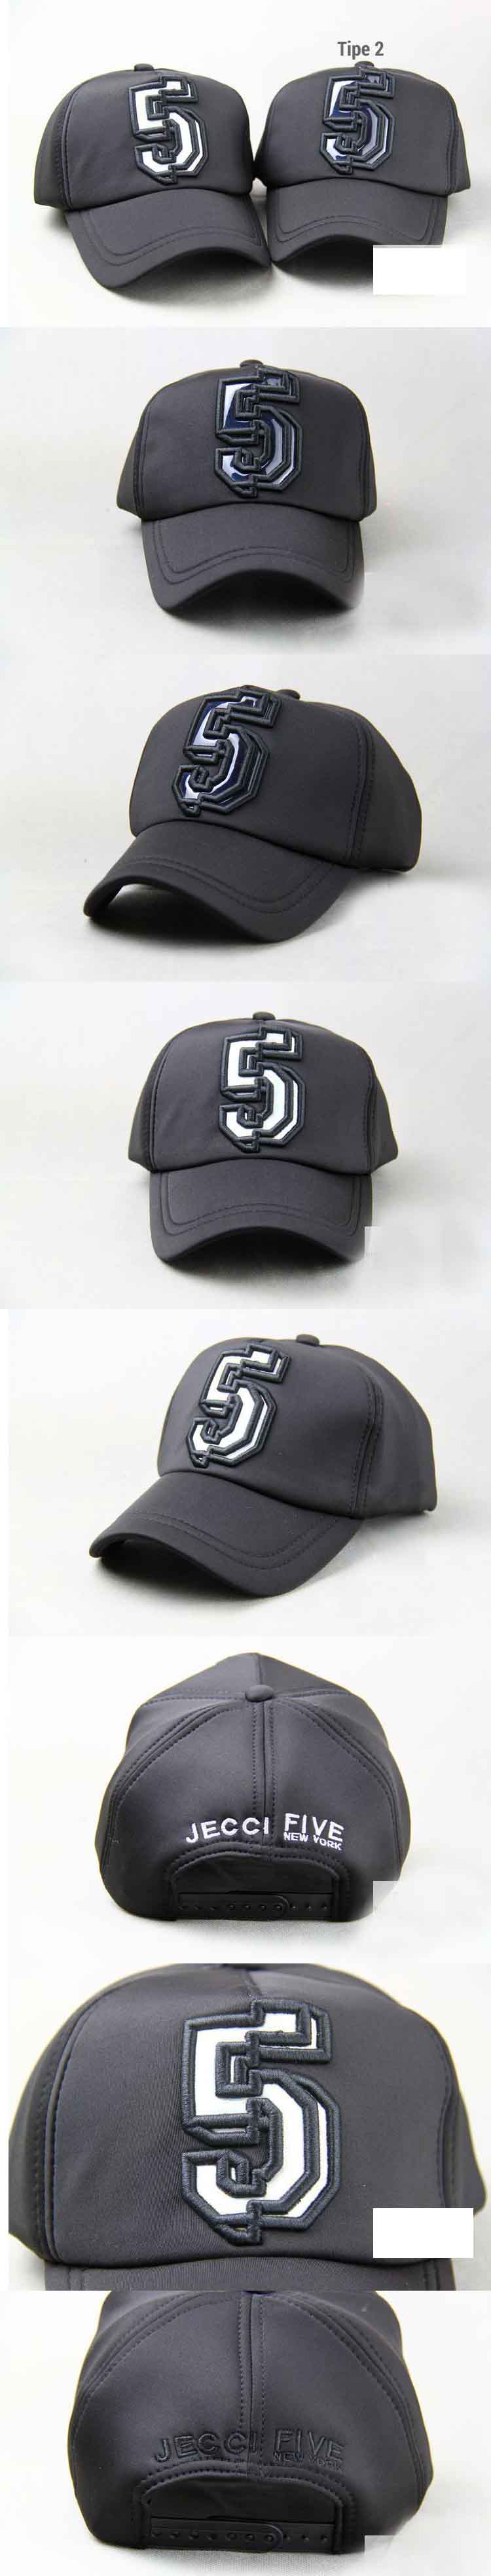 jual topi pria dengan desain angka 5 , keren dan berkualitas, temukan koleksi topi pria keren terlengkap hanya di pfp store